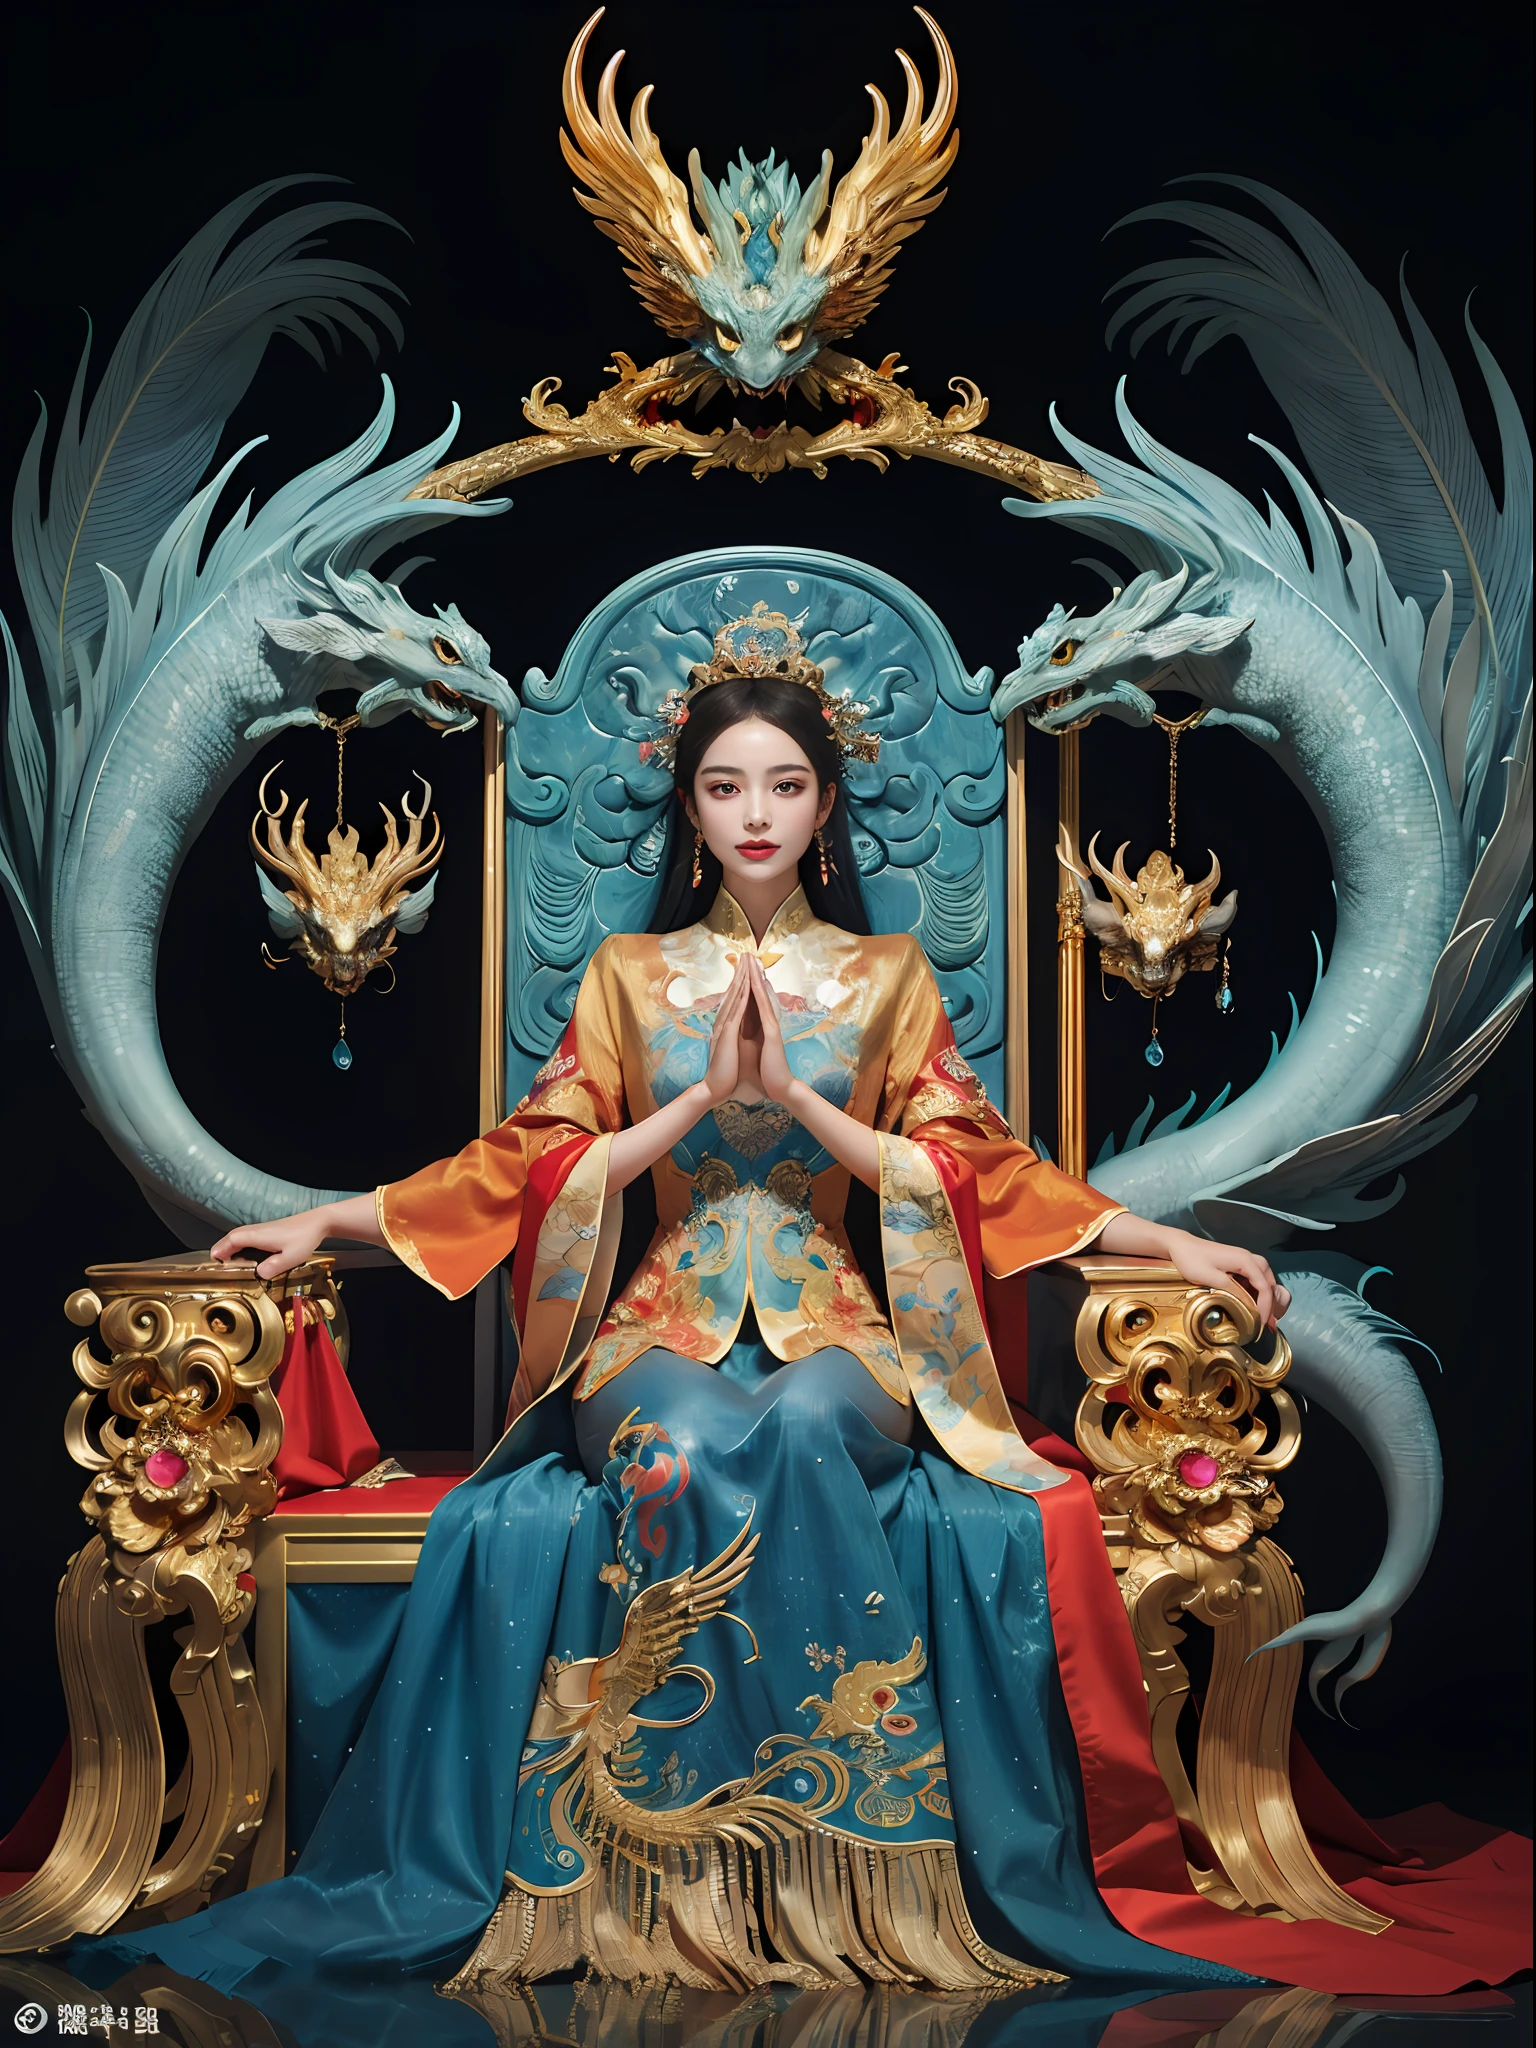 王座に座っている中国人の女の子, a throne encrusted with 貴重な石, 中国の鳳凰の獣に囲まれて, 金 and ruby color, ユニークなモンスターイラスト, セットへダウ, 高解像度, 絵画, 密な組成, 遊び心のある繰り返し, 貴重な石, 結晶, 金, 詳細な絵画, ユニークなモンスターイラストs, 非常に細かいディテール, 現実的, super 高解像度, 複雑な, 超詳細, (皮膚のへこみ), かわいい, フェミニン, 詳細なボディ, (詳細な顔: 1.1), (輪郭のある虹彩), (水彩レンズ), (完璧な目), 4K, 素敵, (傑作: 1.2), (最高品質: 1.2), 素敵 long dress, ダイナミックなポーズ, 豊かな色彩, 映画の光と影，red and 金en clothes